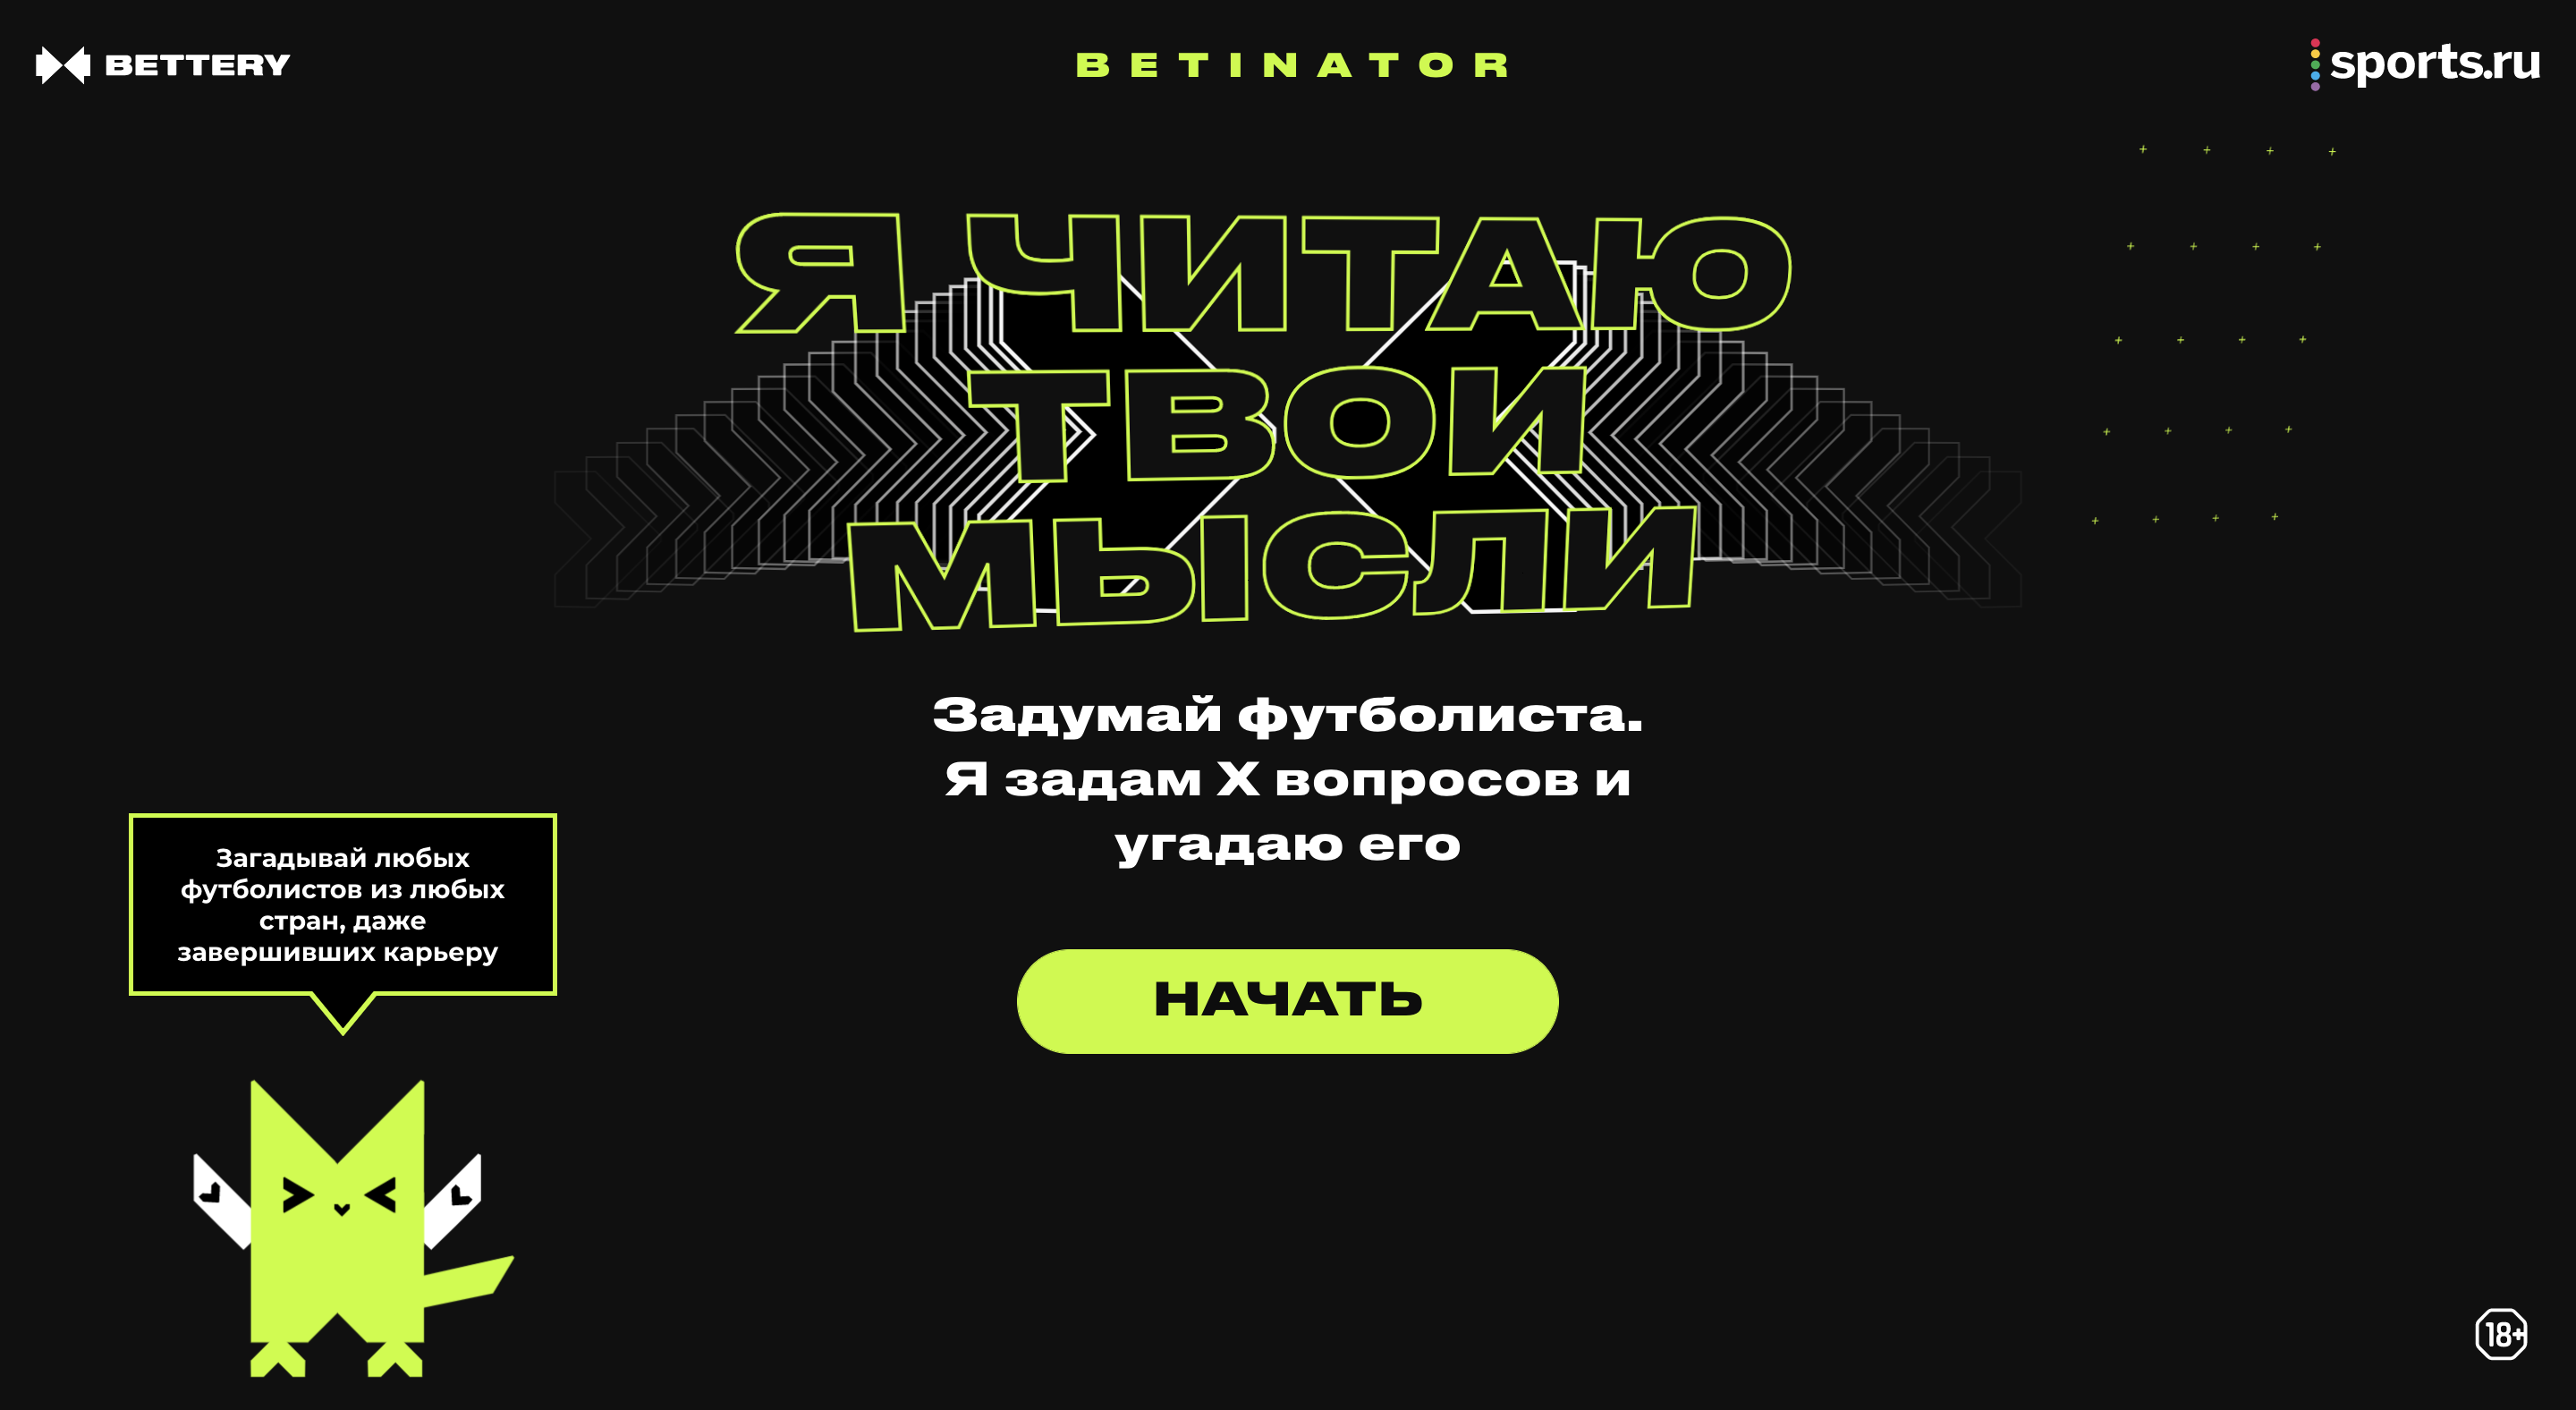 Betinator — игра, которая читает ваши мысли